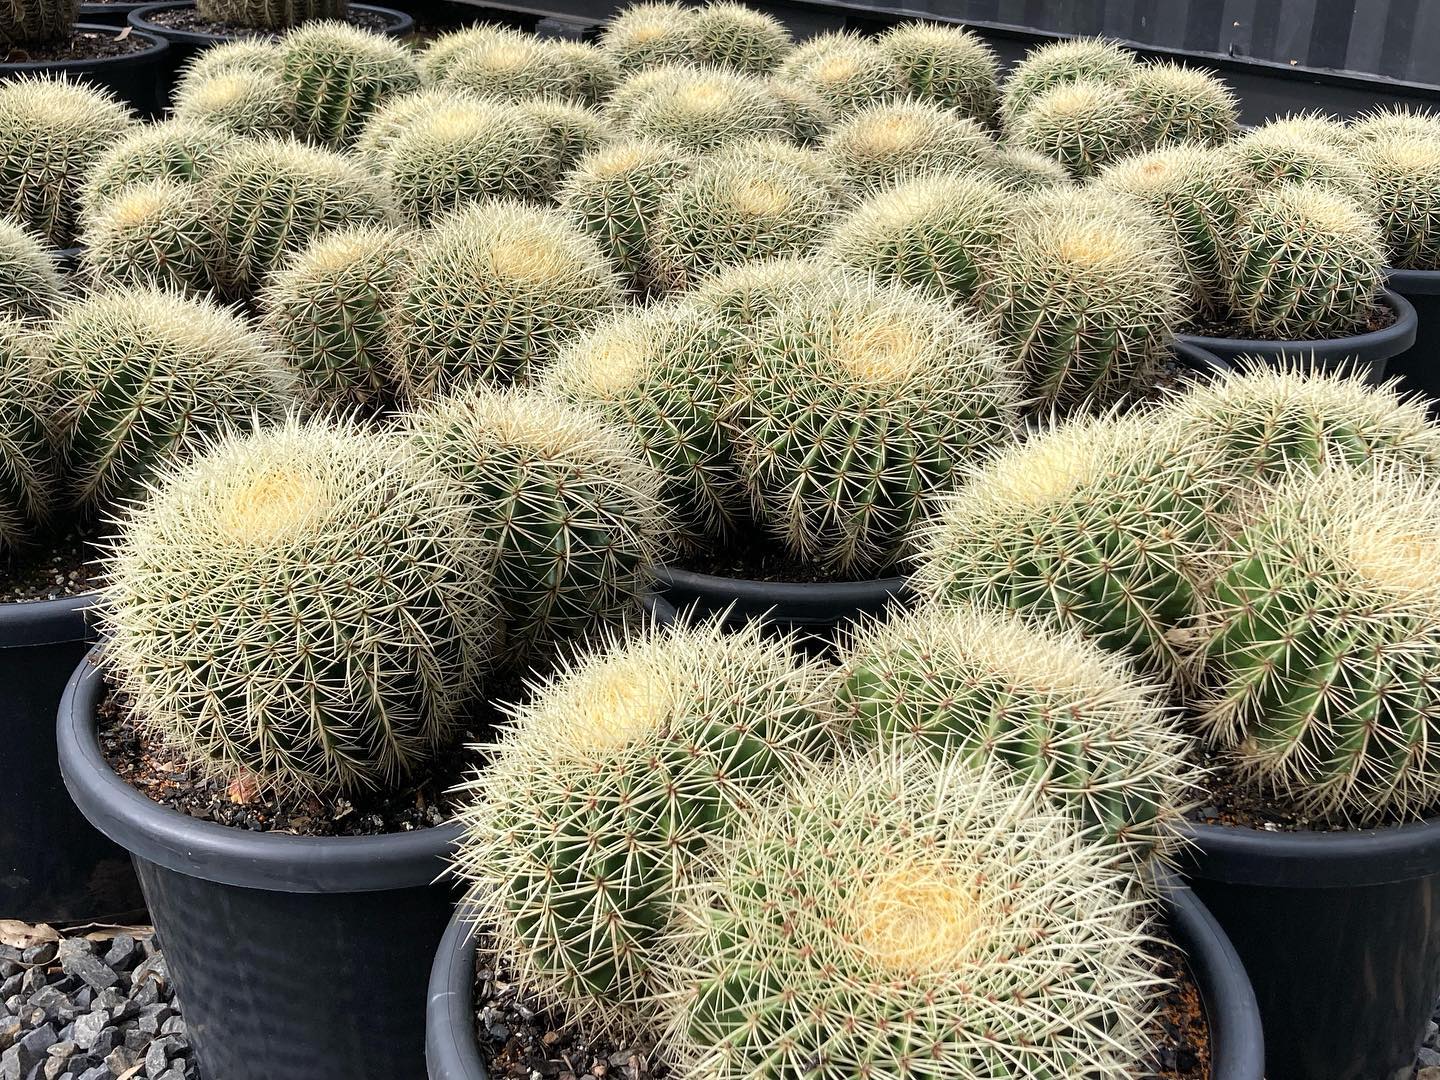 Types of indoor cactus - Echinocactus grusonii